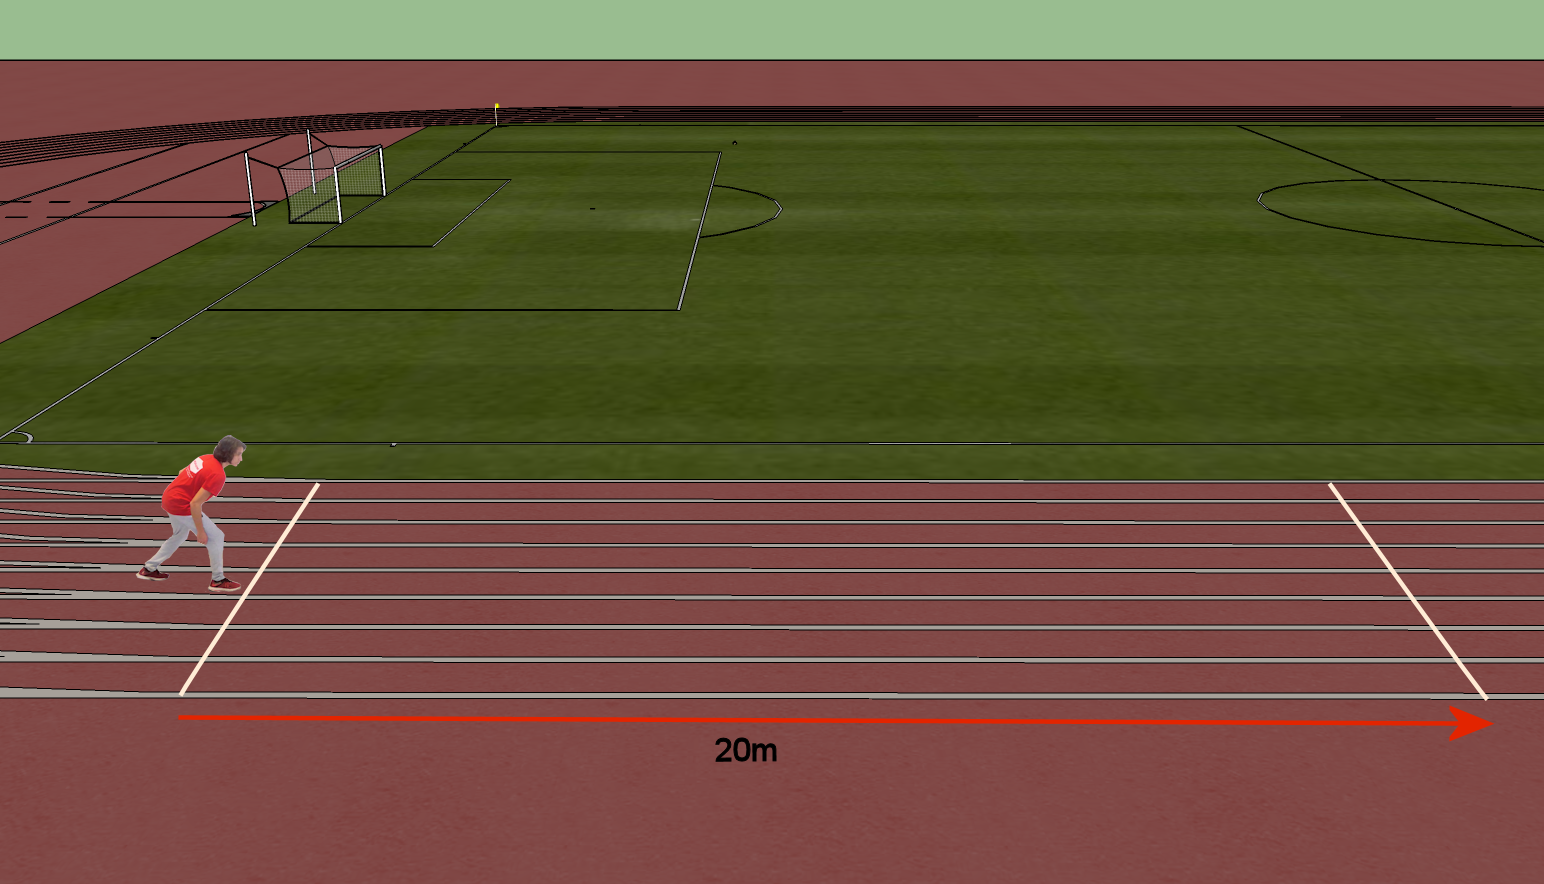 The 20 metres sprint test